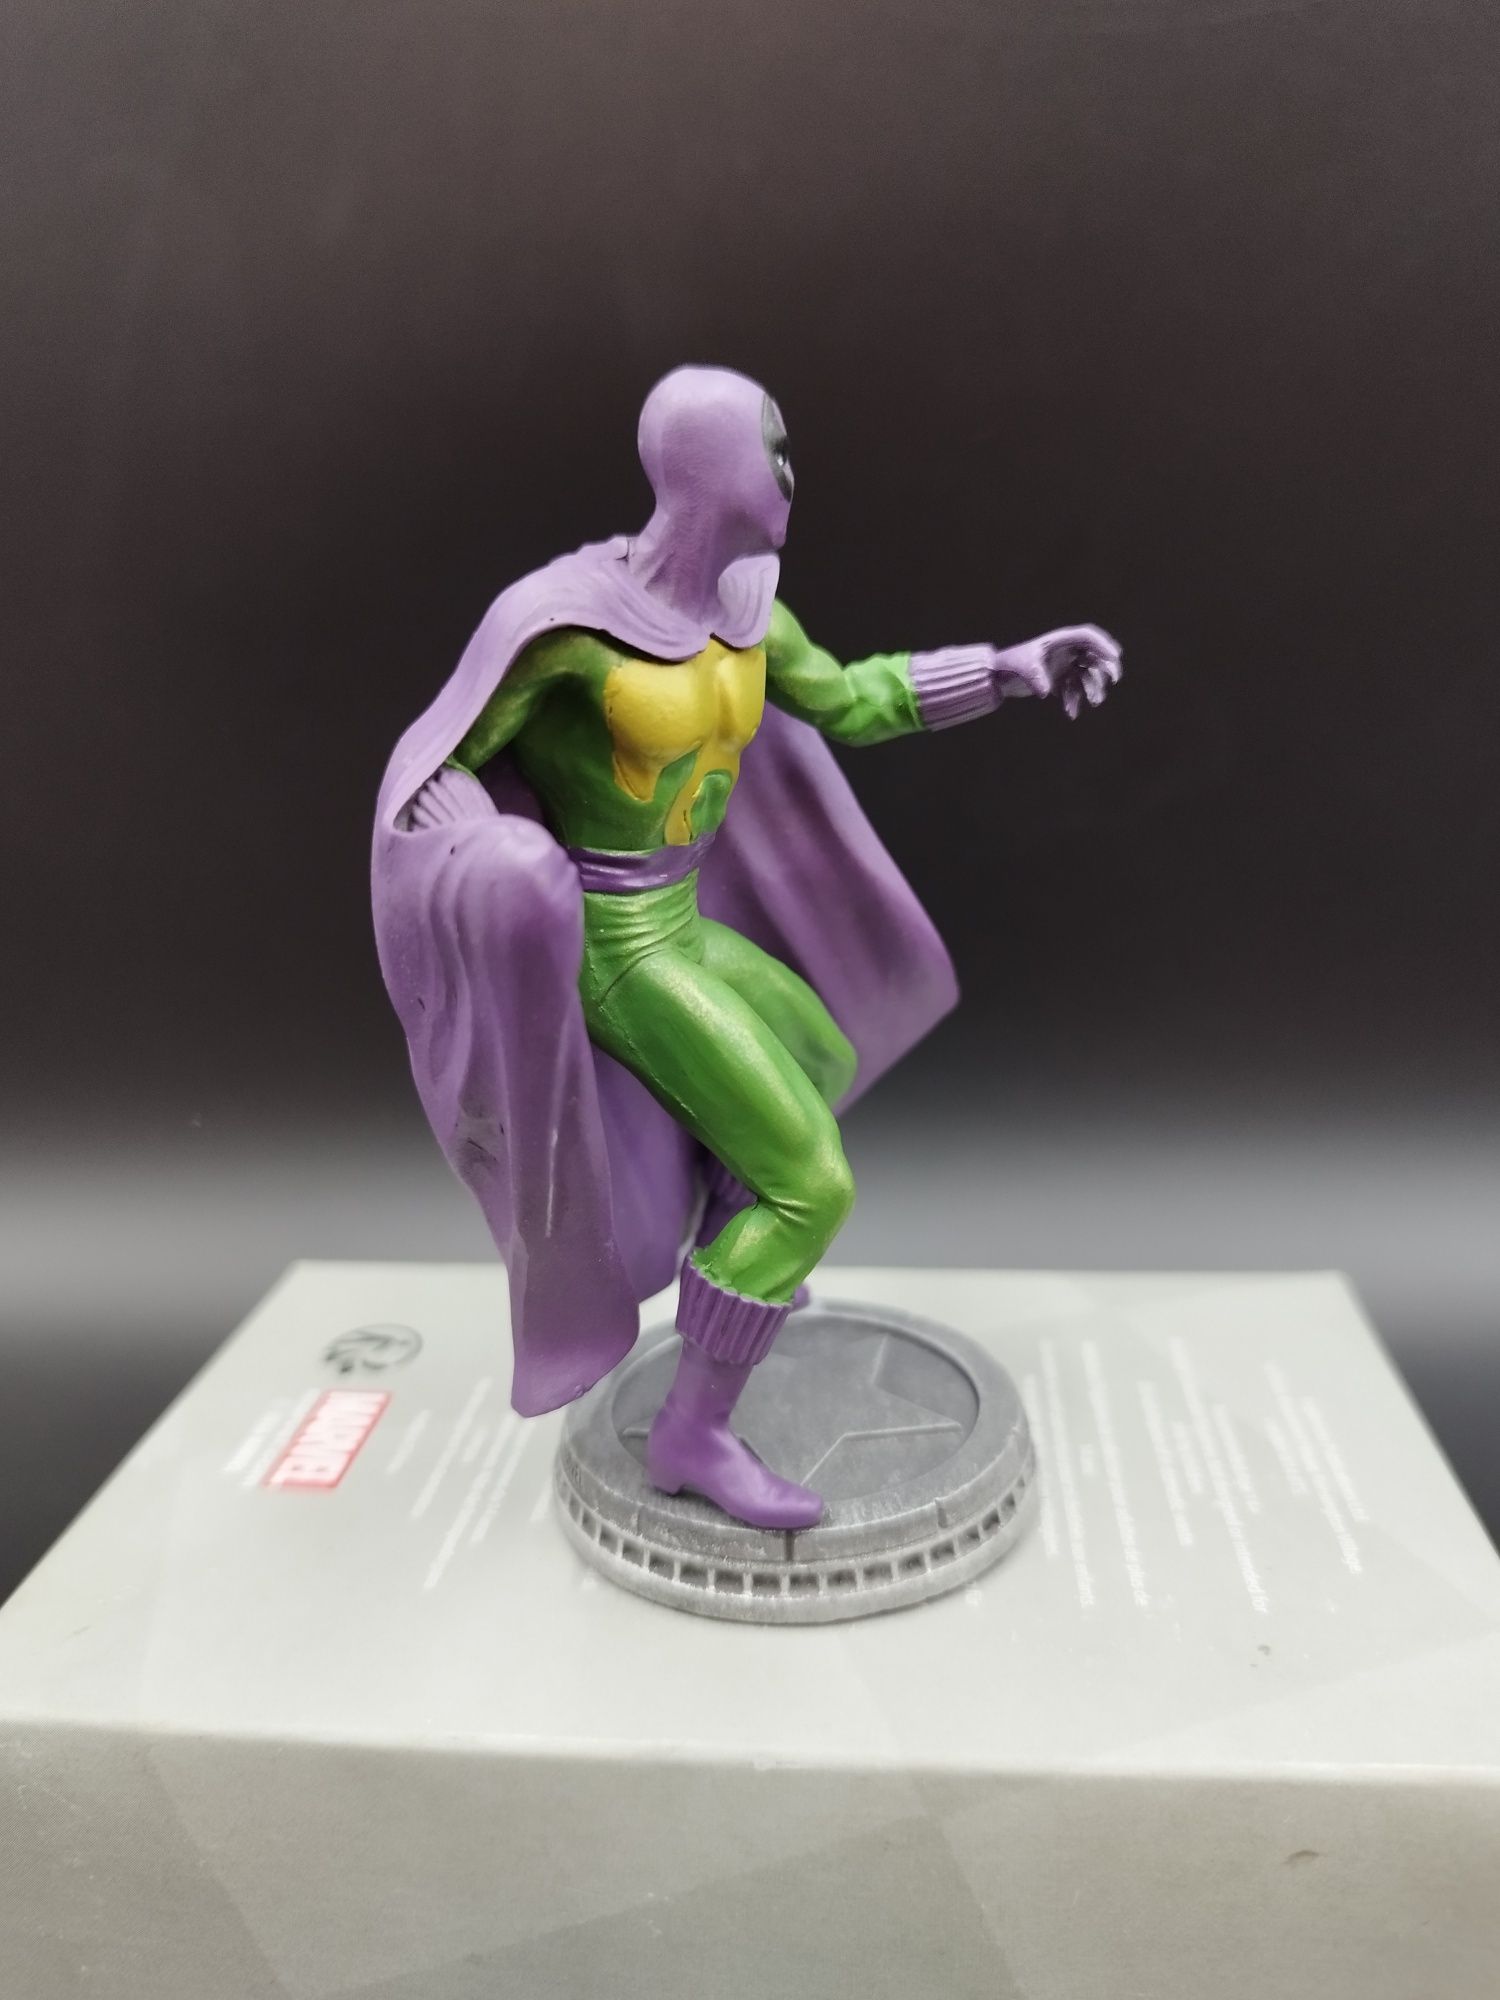 Figurka Marvel Szachowa Prowler #91 ok 10 cm